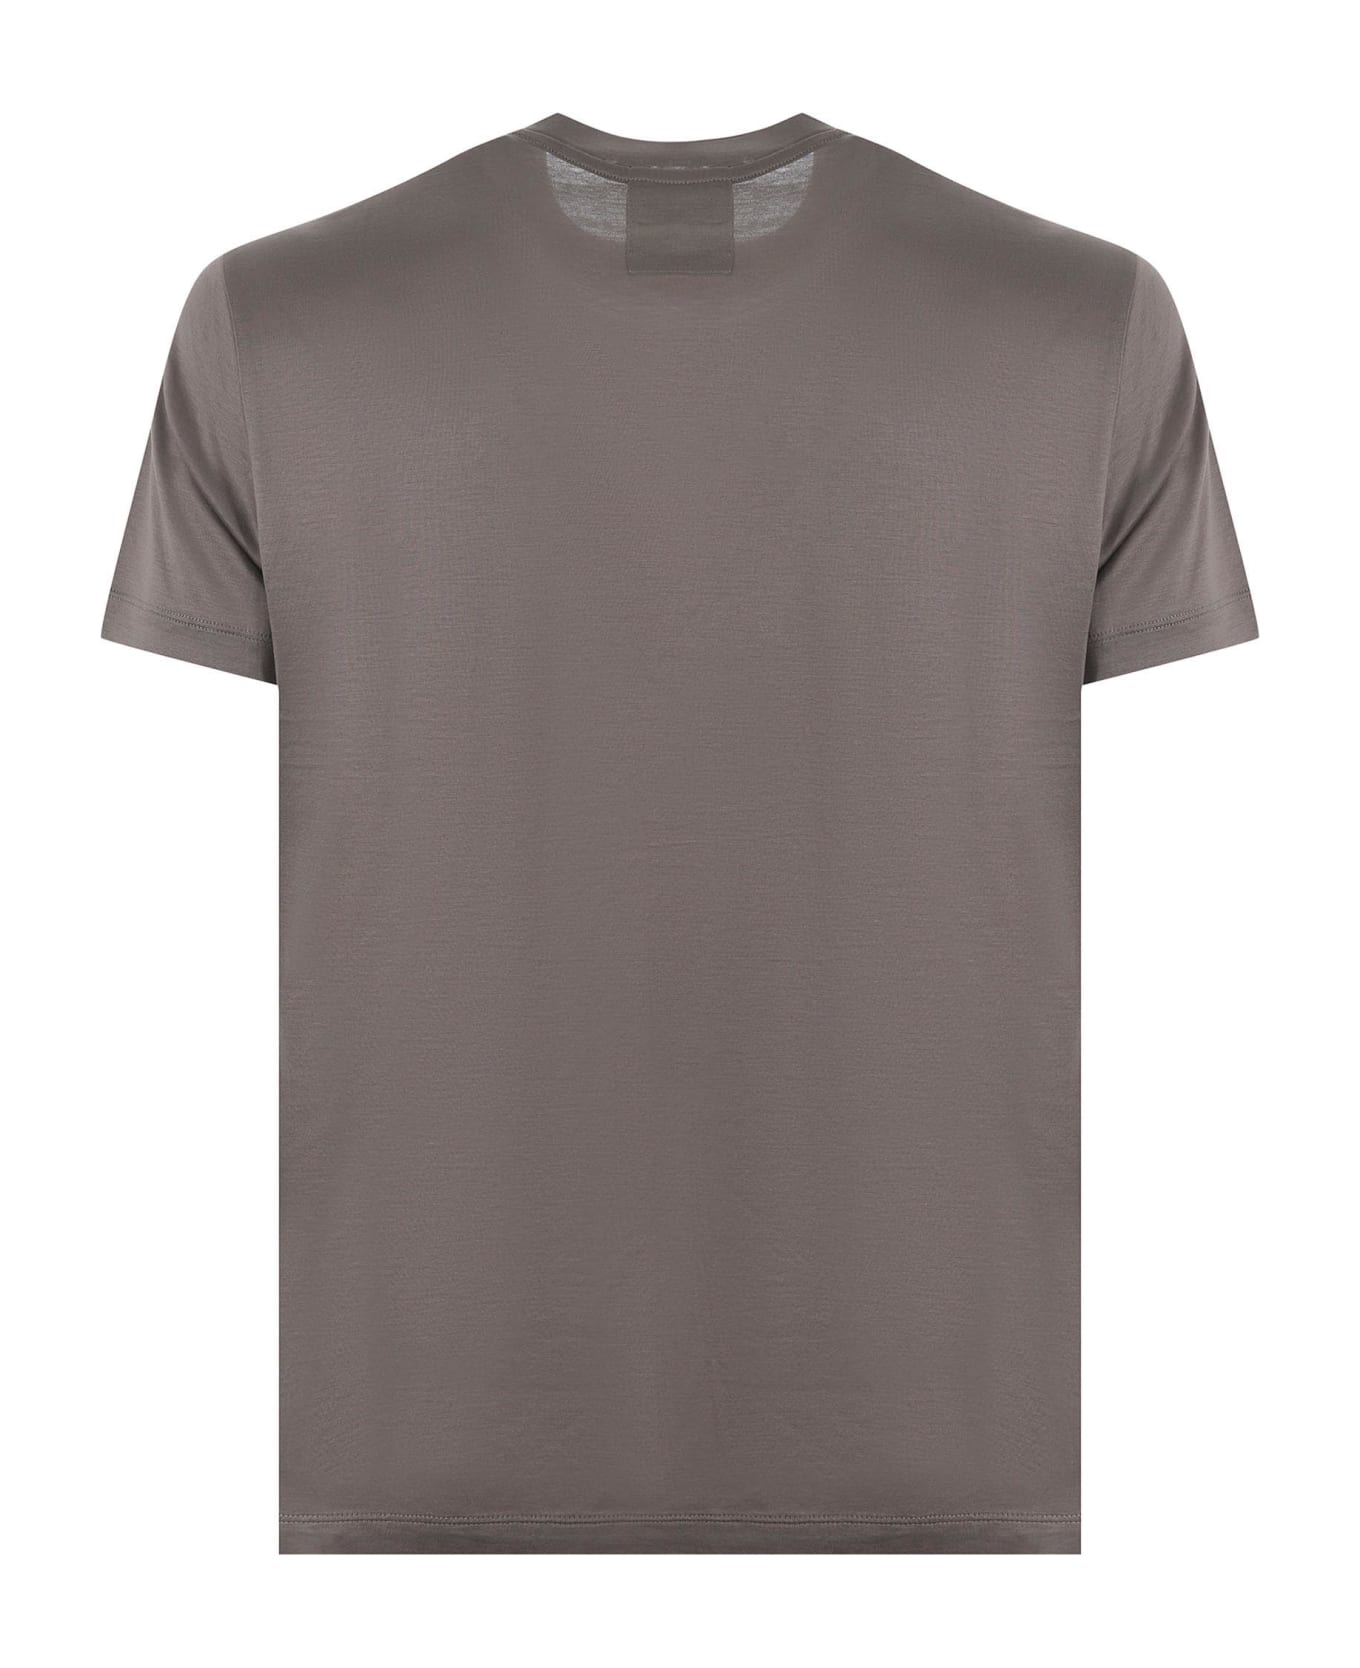 Emporio Armani T-shirt - Tortora scuro